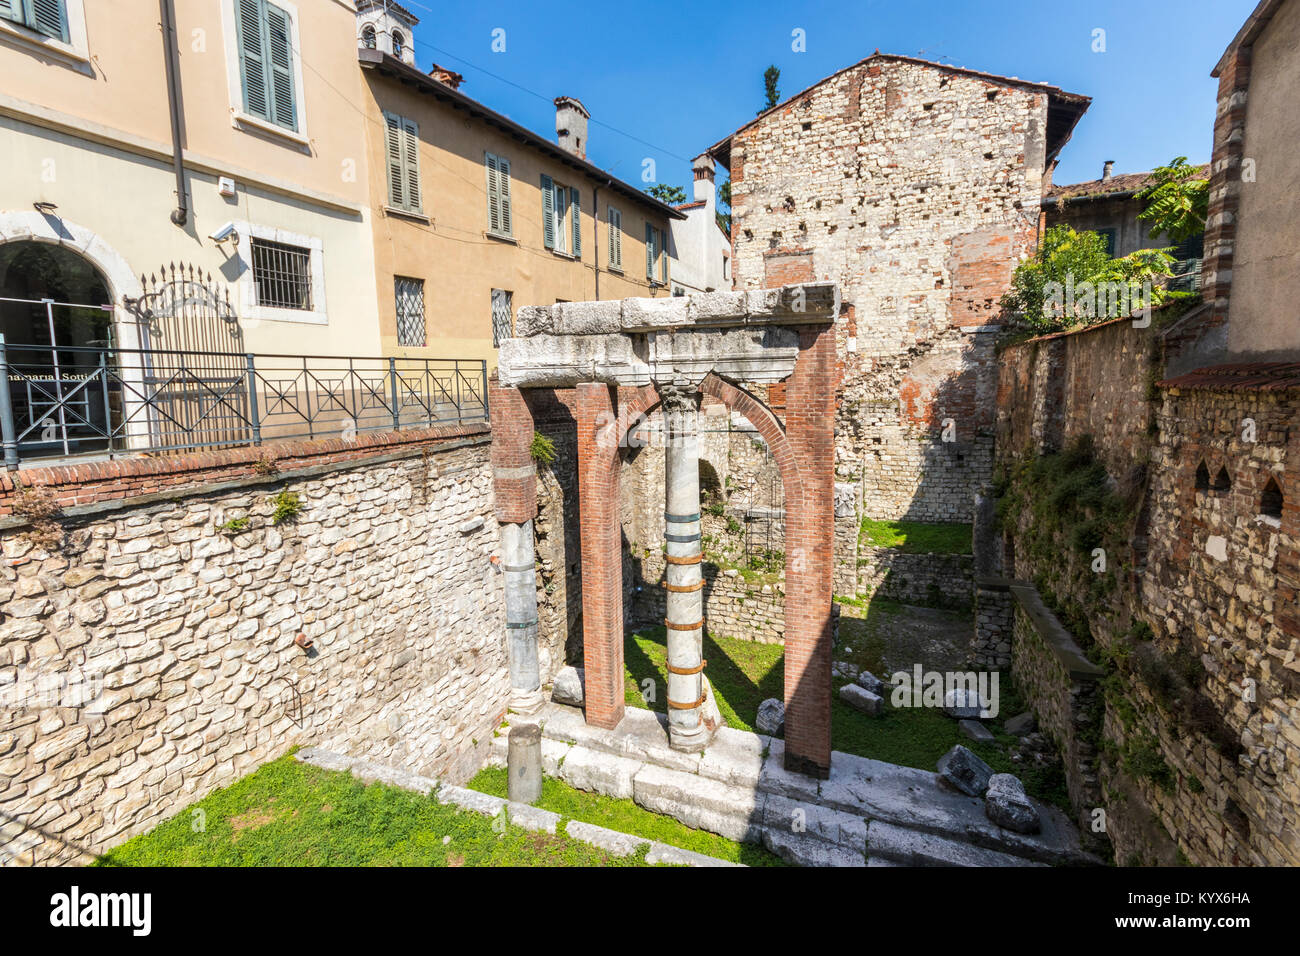 Die Ruinen des Forum Romanum in Brescia, Italien, im Zentrum der alten römischen Stadt Brixia Stockfoto